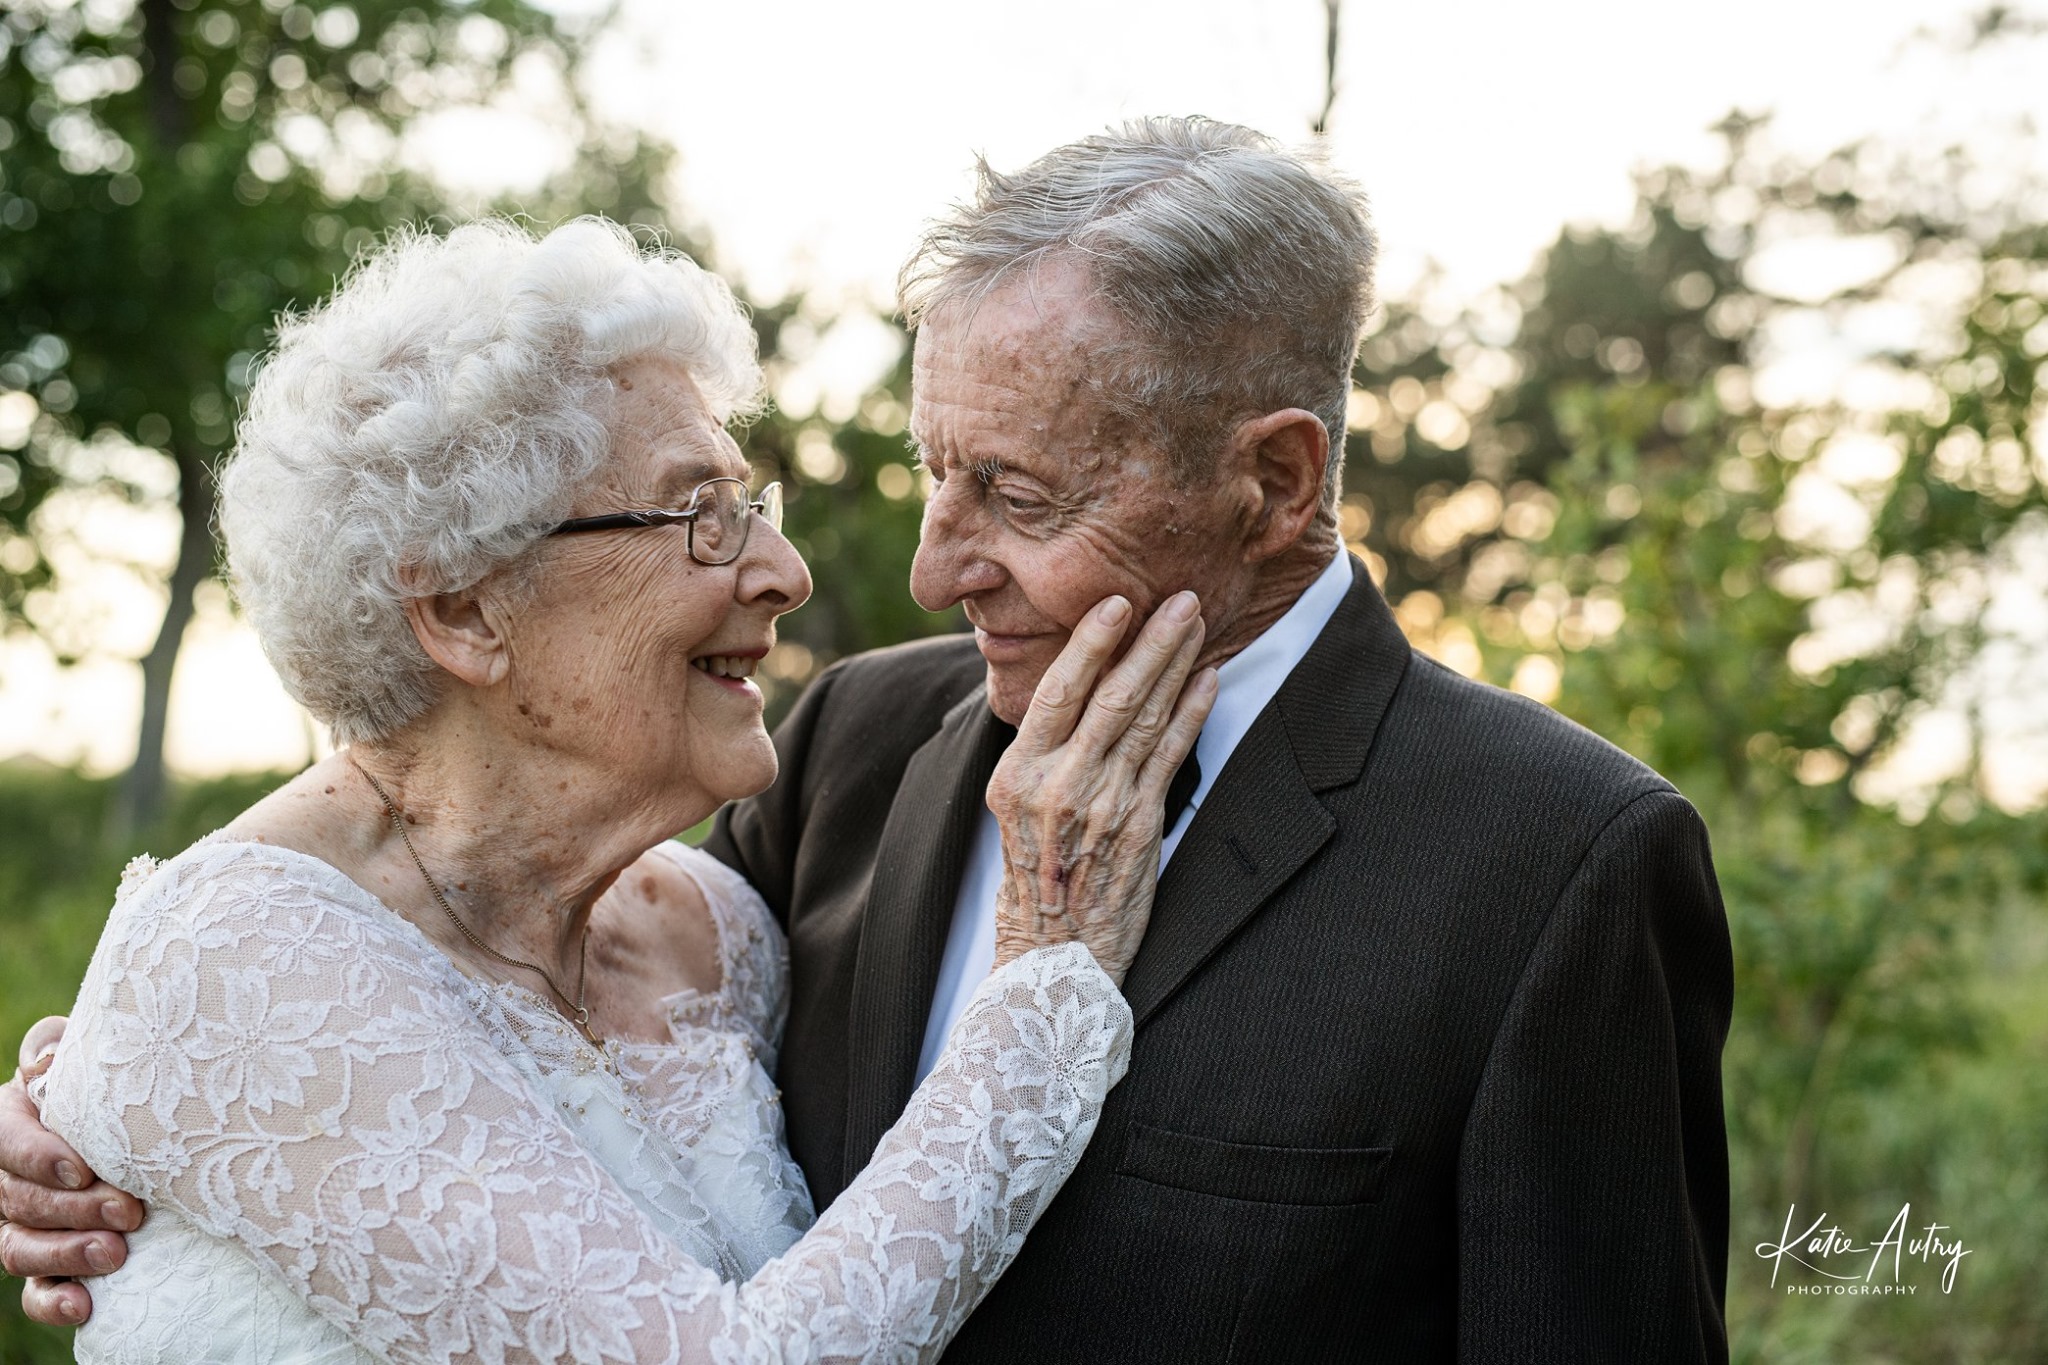 Ông bà Stone kỷ niệm 60 năm ngày cưới bằng một bộ ảnh cảm động. (Ảnh cung cấp bởi <a href="https://www.facebook.com/katieautryphotography">Katie Autry</a>)